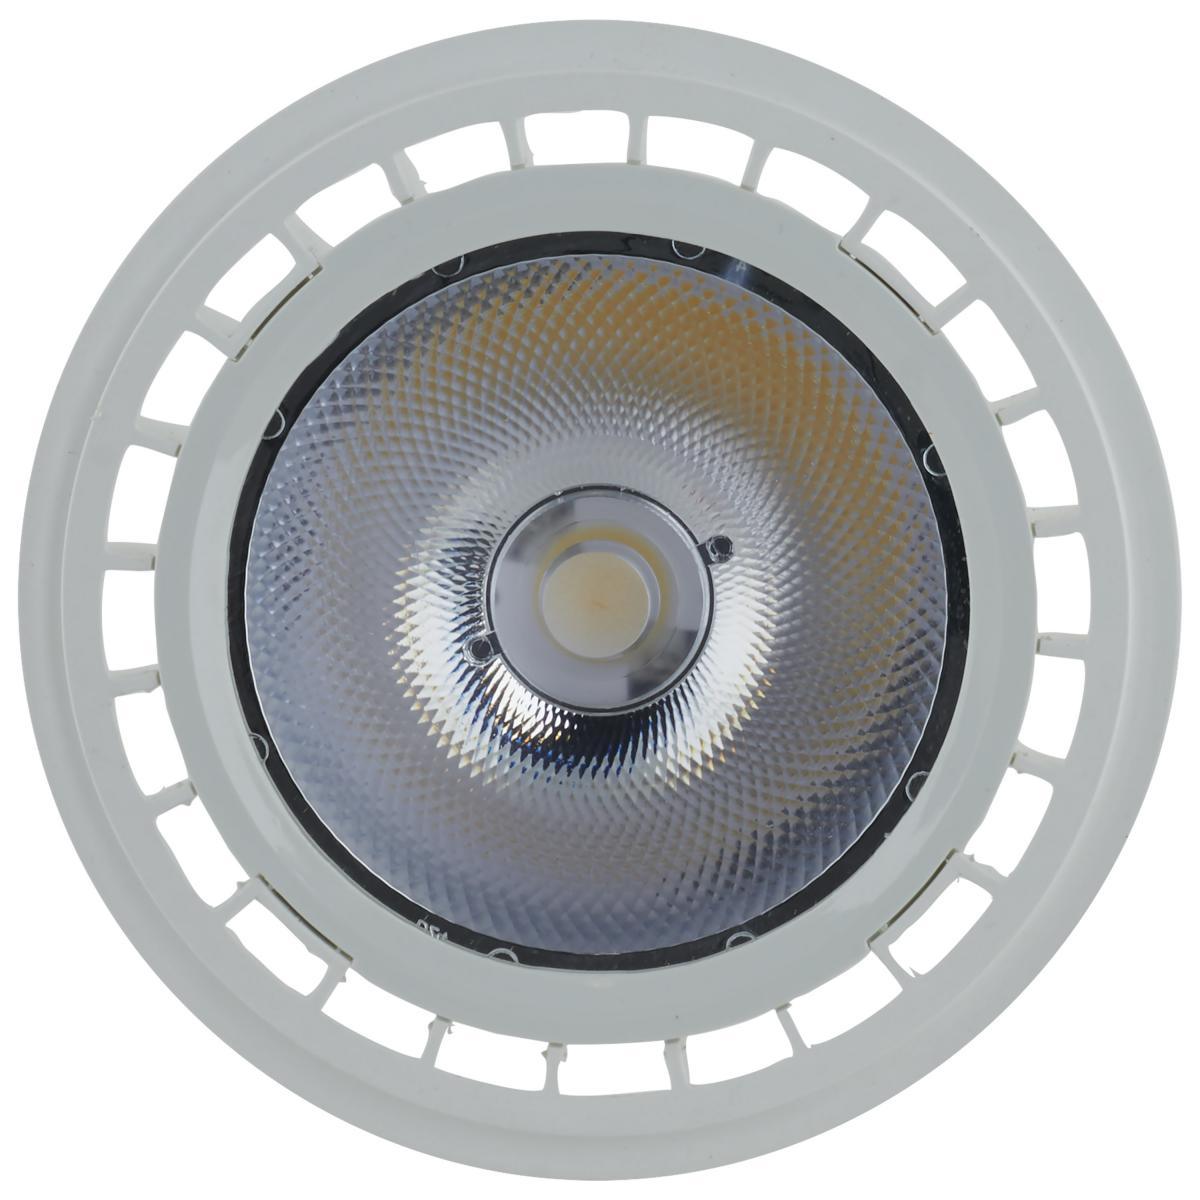 LED AR111 Reflector bulb, 12 watt, 850 Lumens, 3000K, G53 Base, 12 Deg. Spot - Bees Lighting